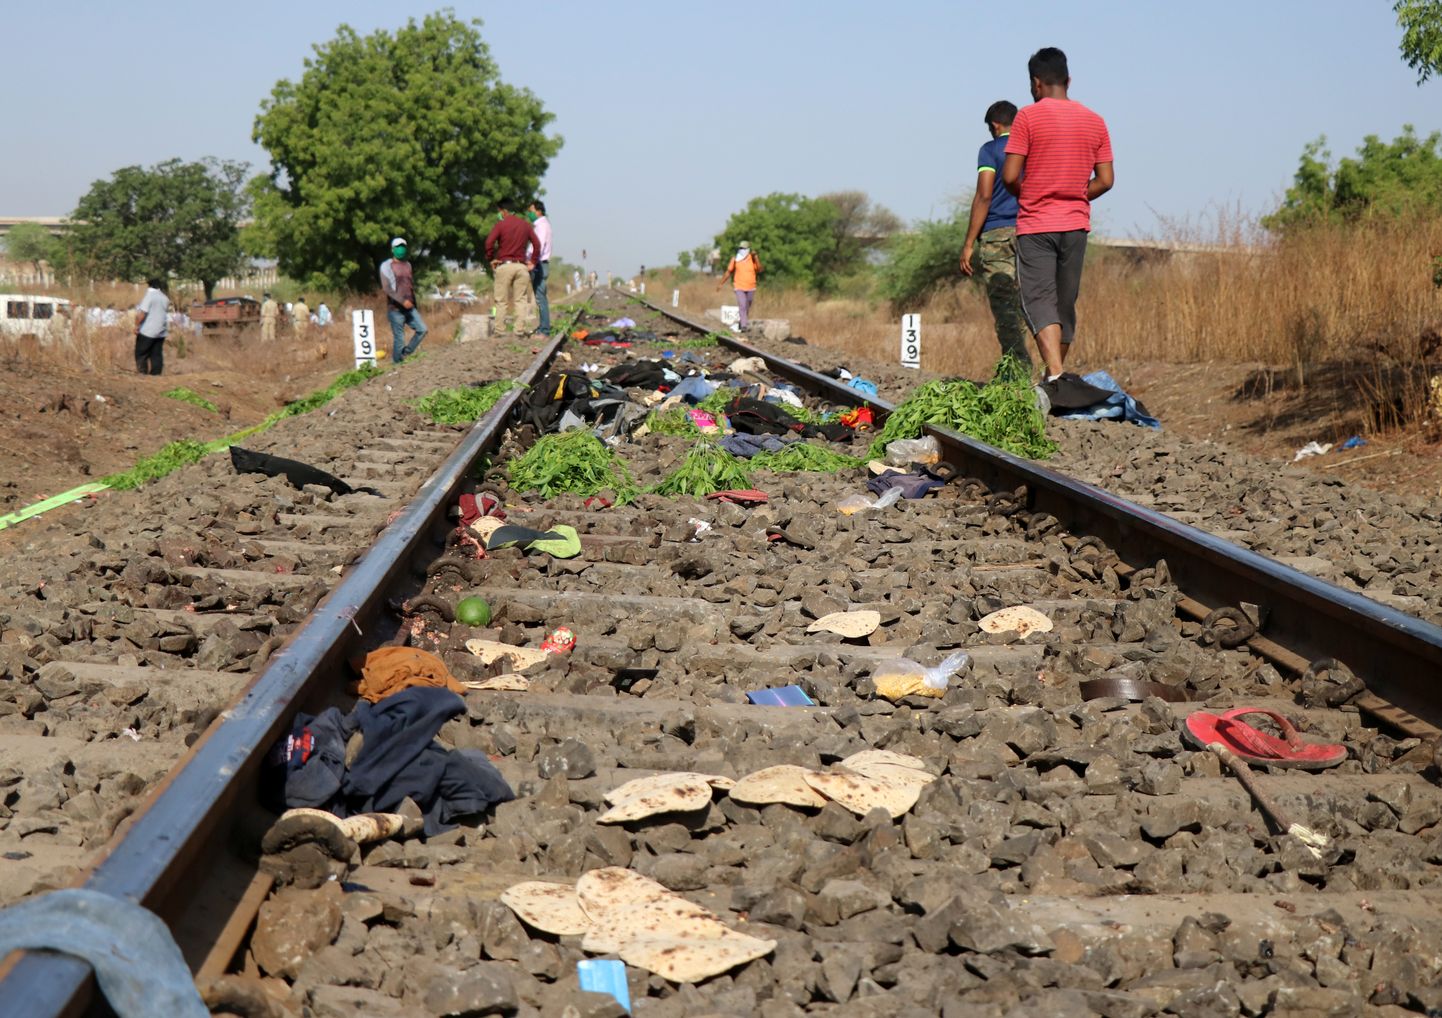 Negadījuma vieta Indijā, kur vilciens nobraucis 16 uz sliedēm gulošus cilvēkus .